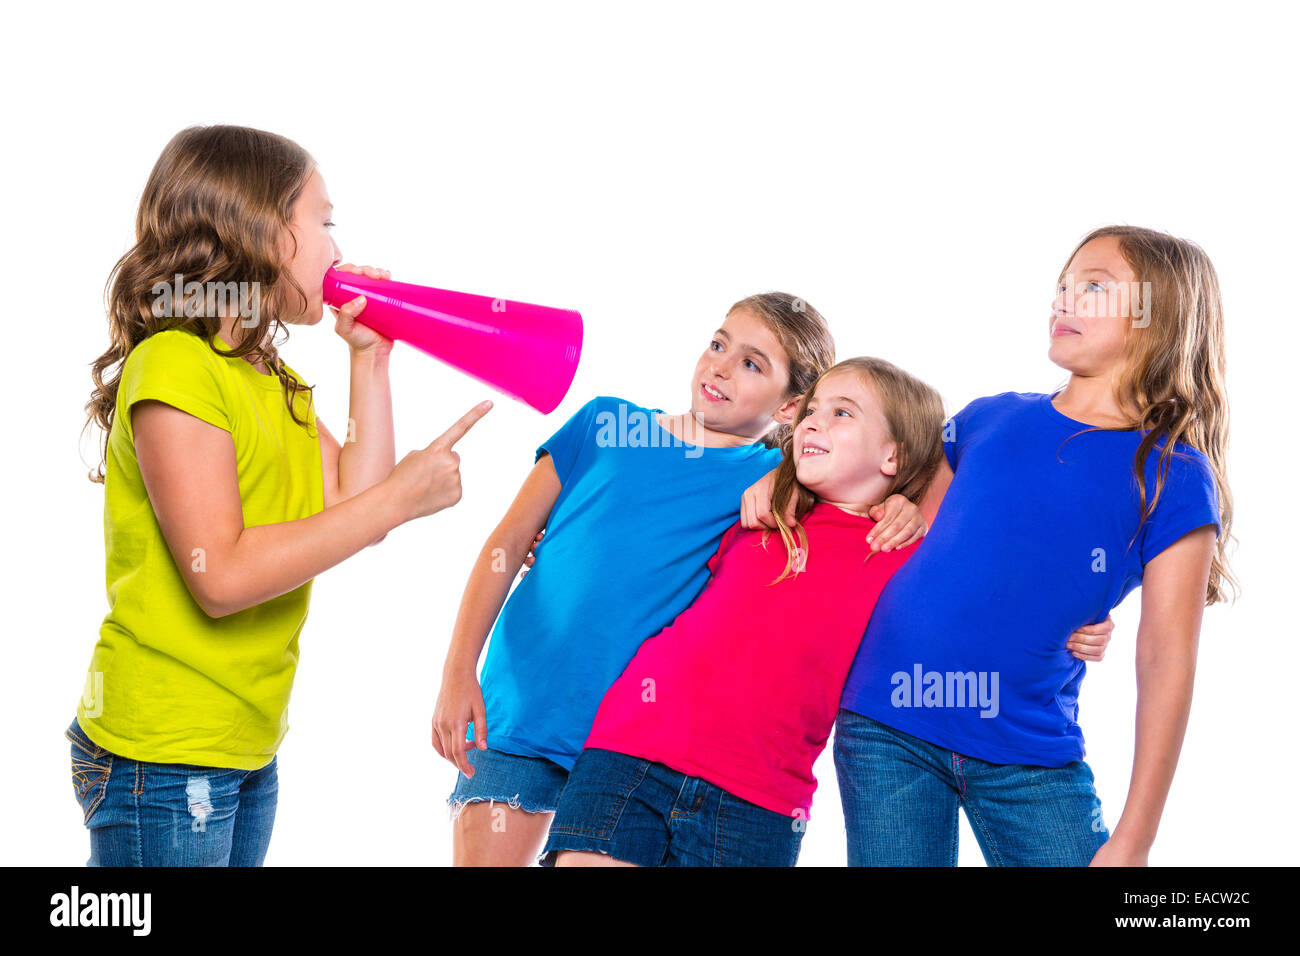 Leader mégaphone kid girl crier parlant à des amis sur fond blanc le leadership politique Banque D'Images